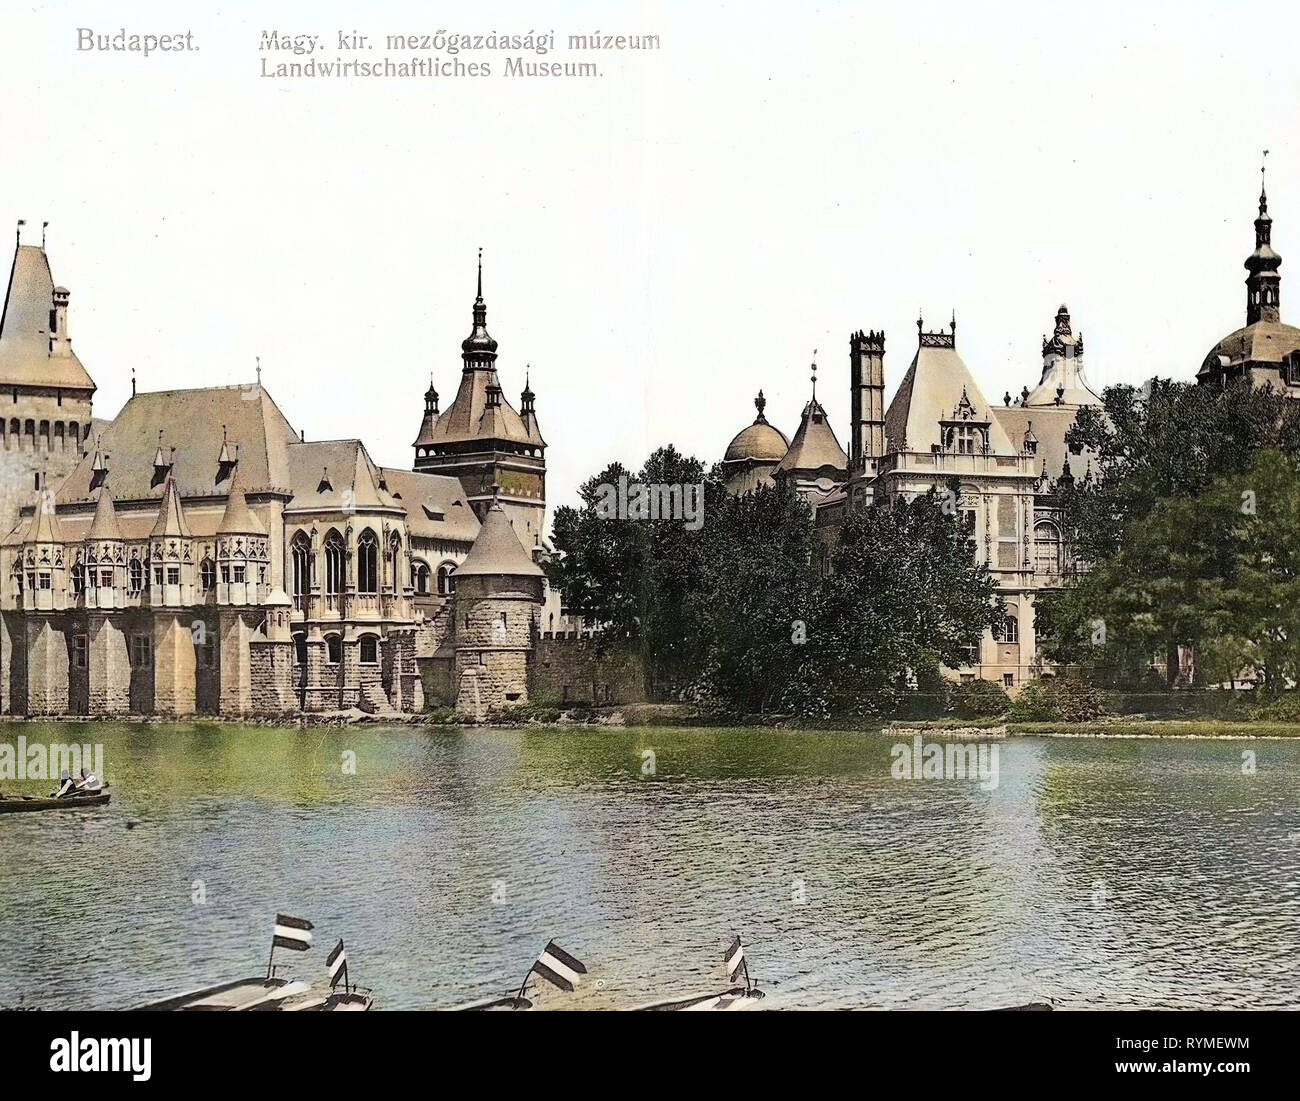 Immagini storiche del Castello Vajdahunyad (Budapest), 1907, Budapest, Museo Landwirtschaftliches, Ungheria Foto Stock